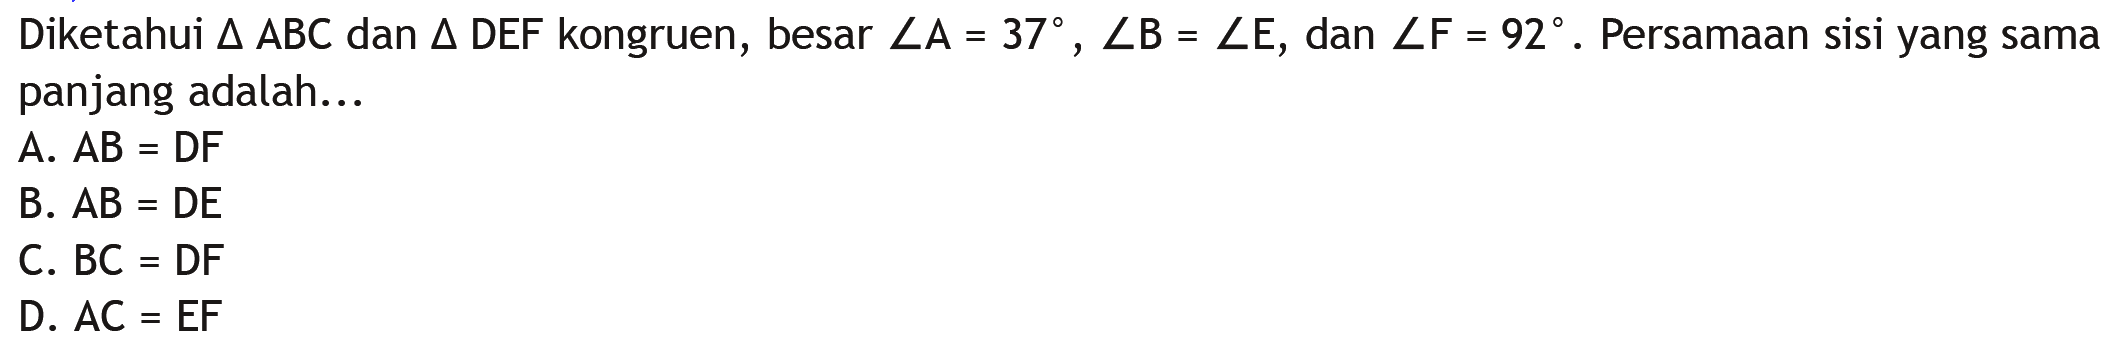 Diketahui  segitiga ABC  dan  segitiga DEF  kongruen, besar  sudut A=37, sudut B=sudut E , dan  sudut F=92 . Persamaan sisi yang sama panjang adalah...